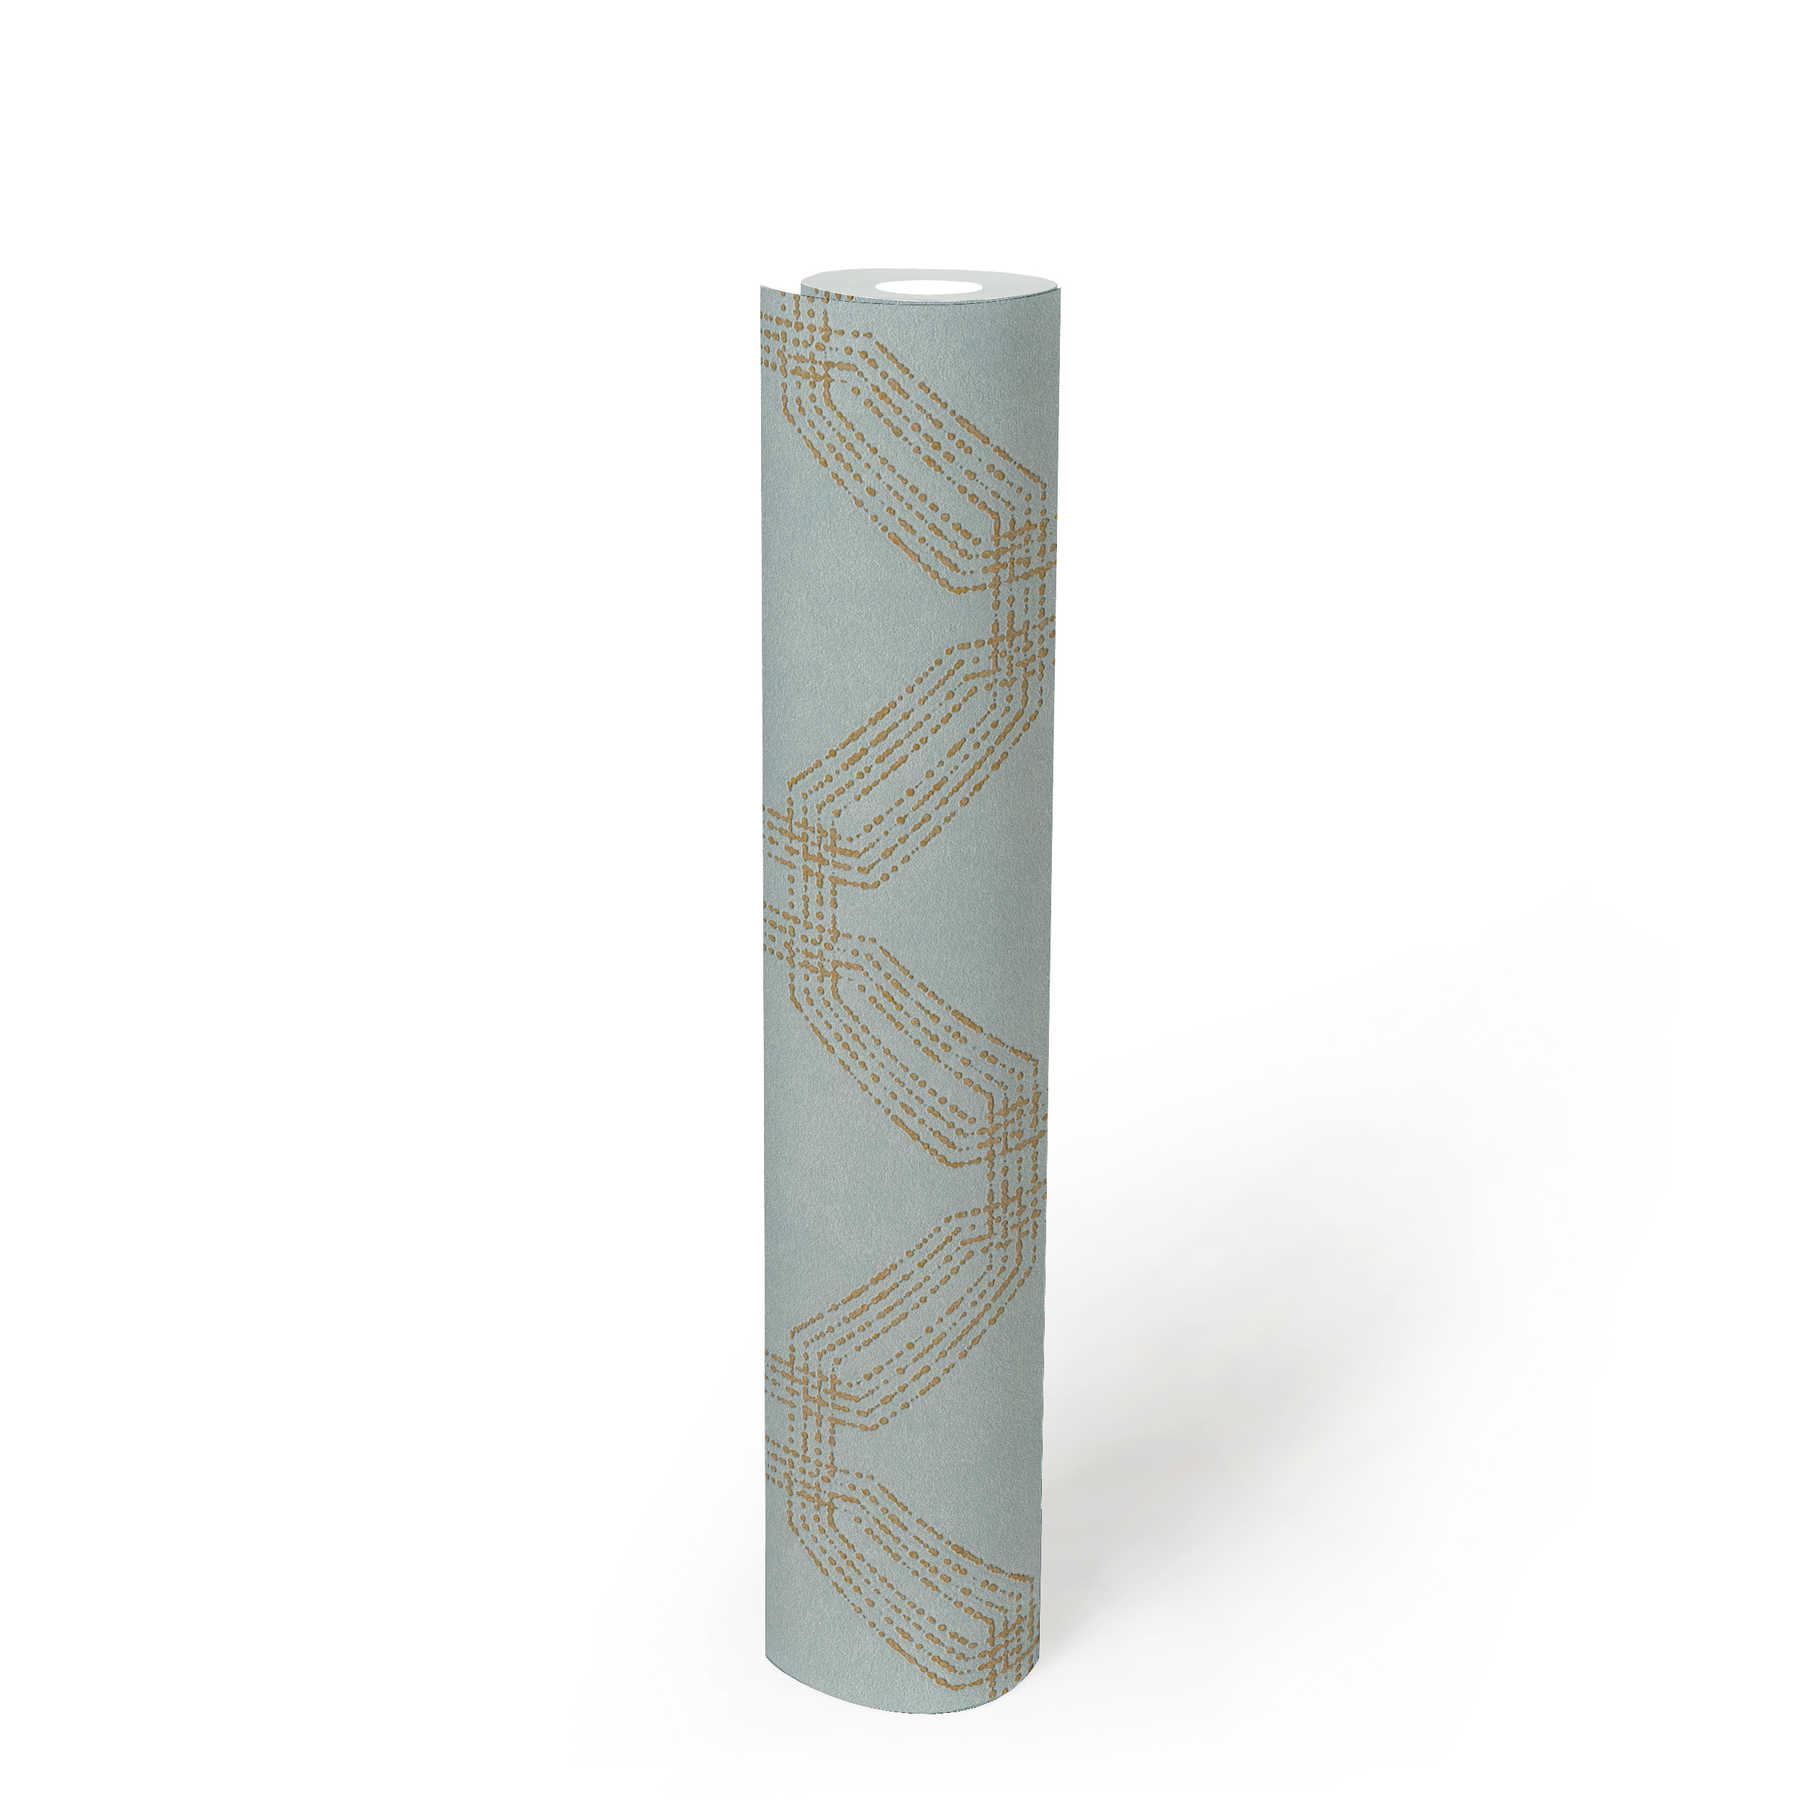             Papier peint géométrique texturé avec aspect losange - bleu, or, vert
        